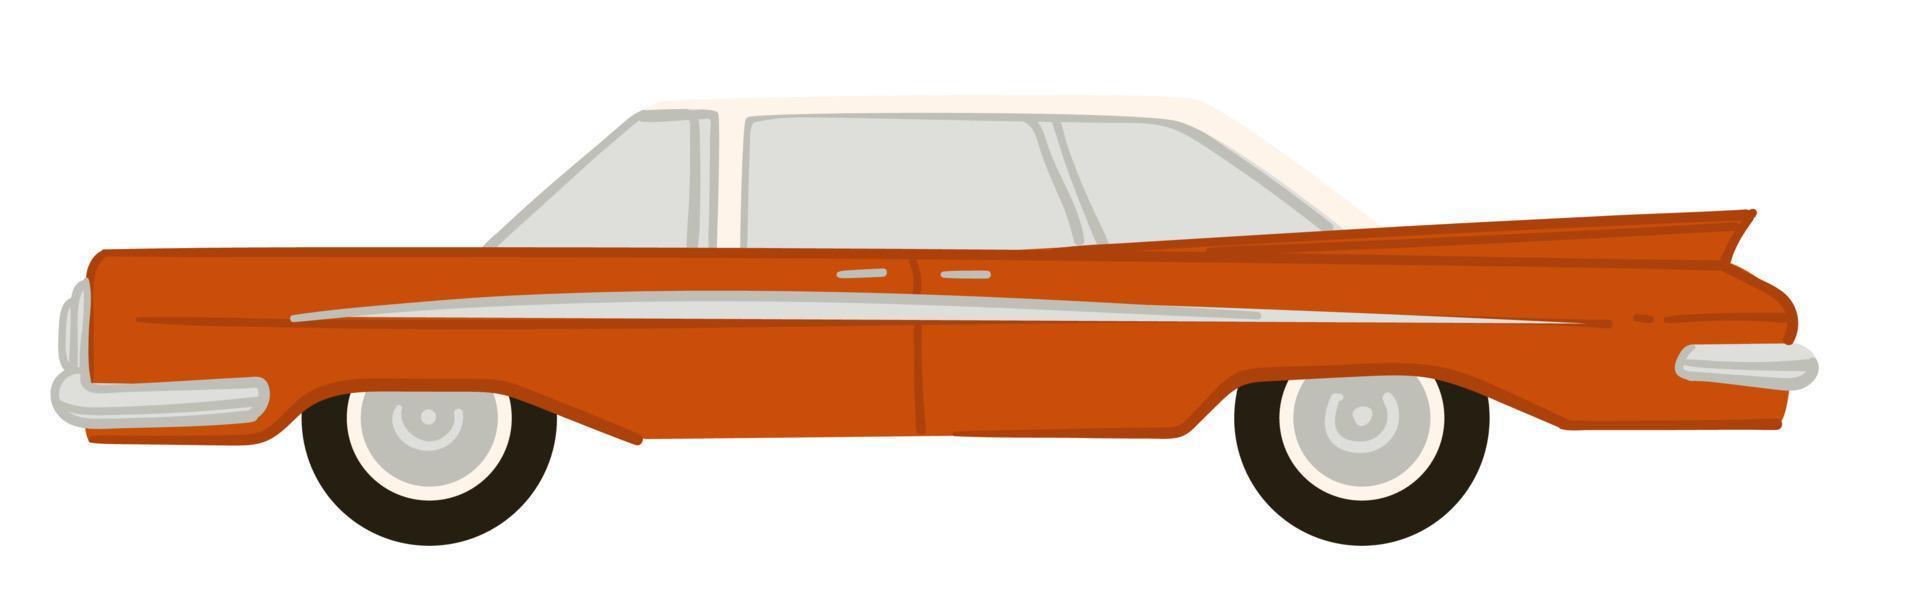 klassisches amerikanisches retro-auto von 1960, autodesign vektor